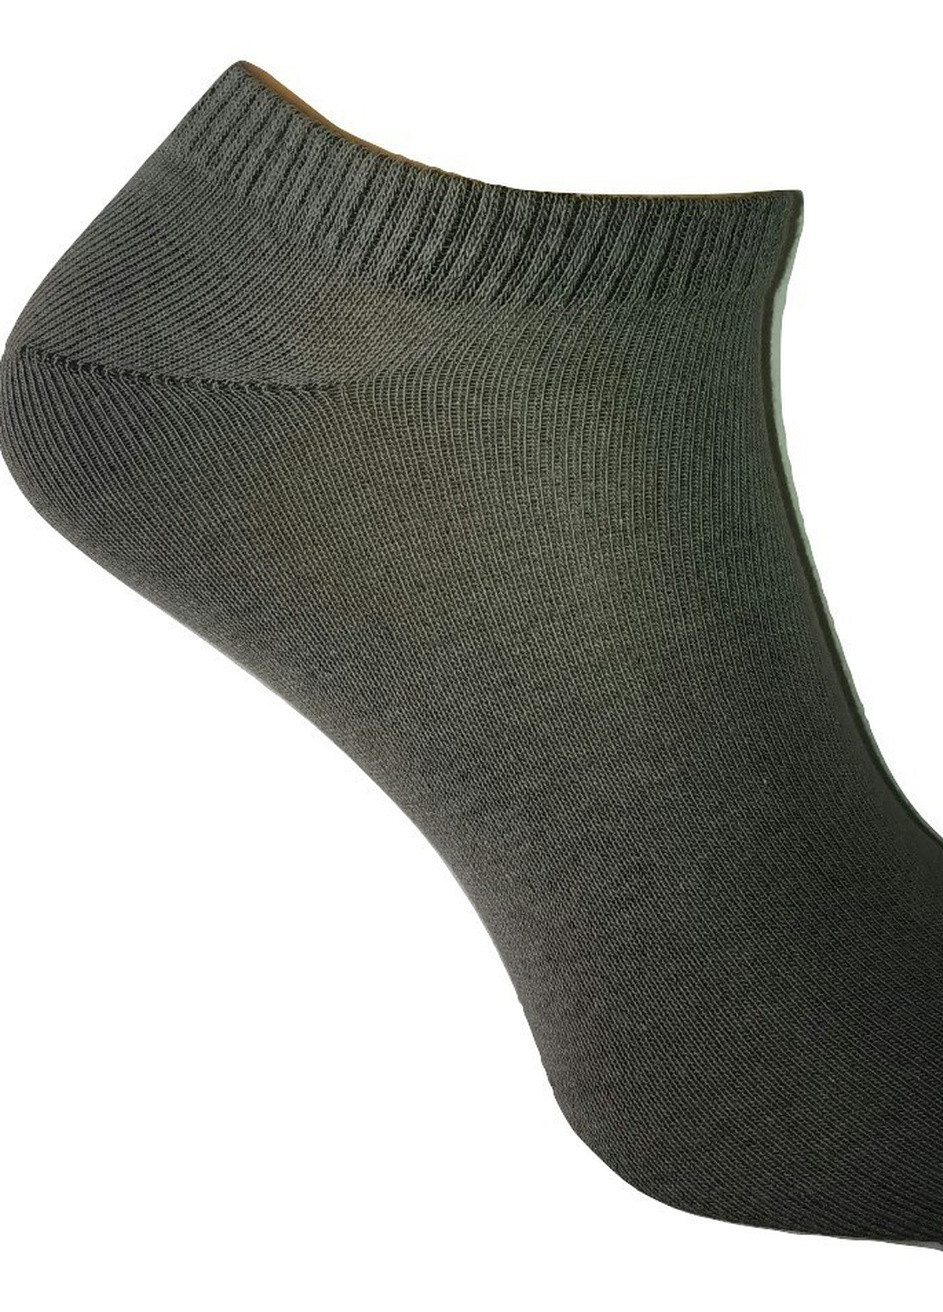 Шкарпетки чоловічі ТМ "Нова пара" укорочена висота 433У НОВА ПАРА укорочена висота (257285446)